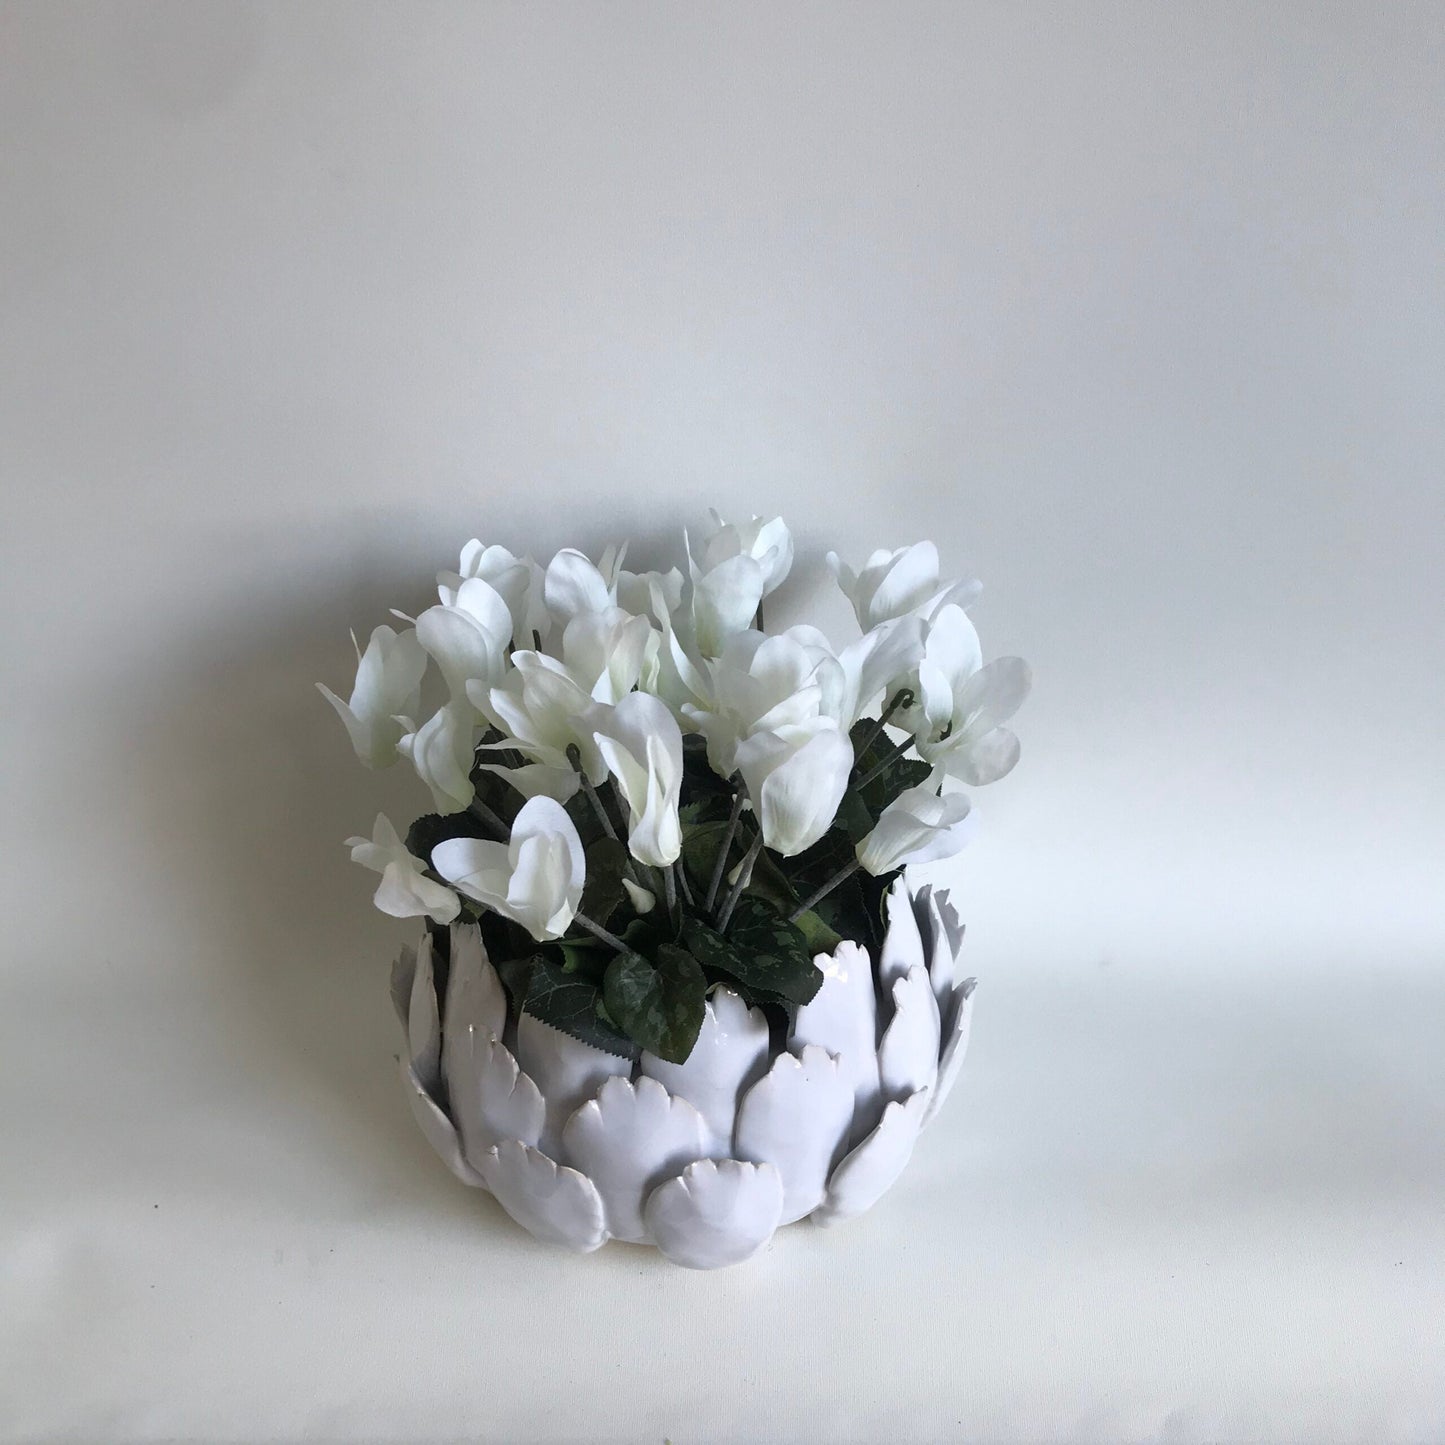 Cyclamen in white ceramic artichoke planter